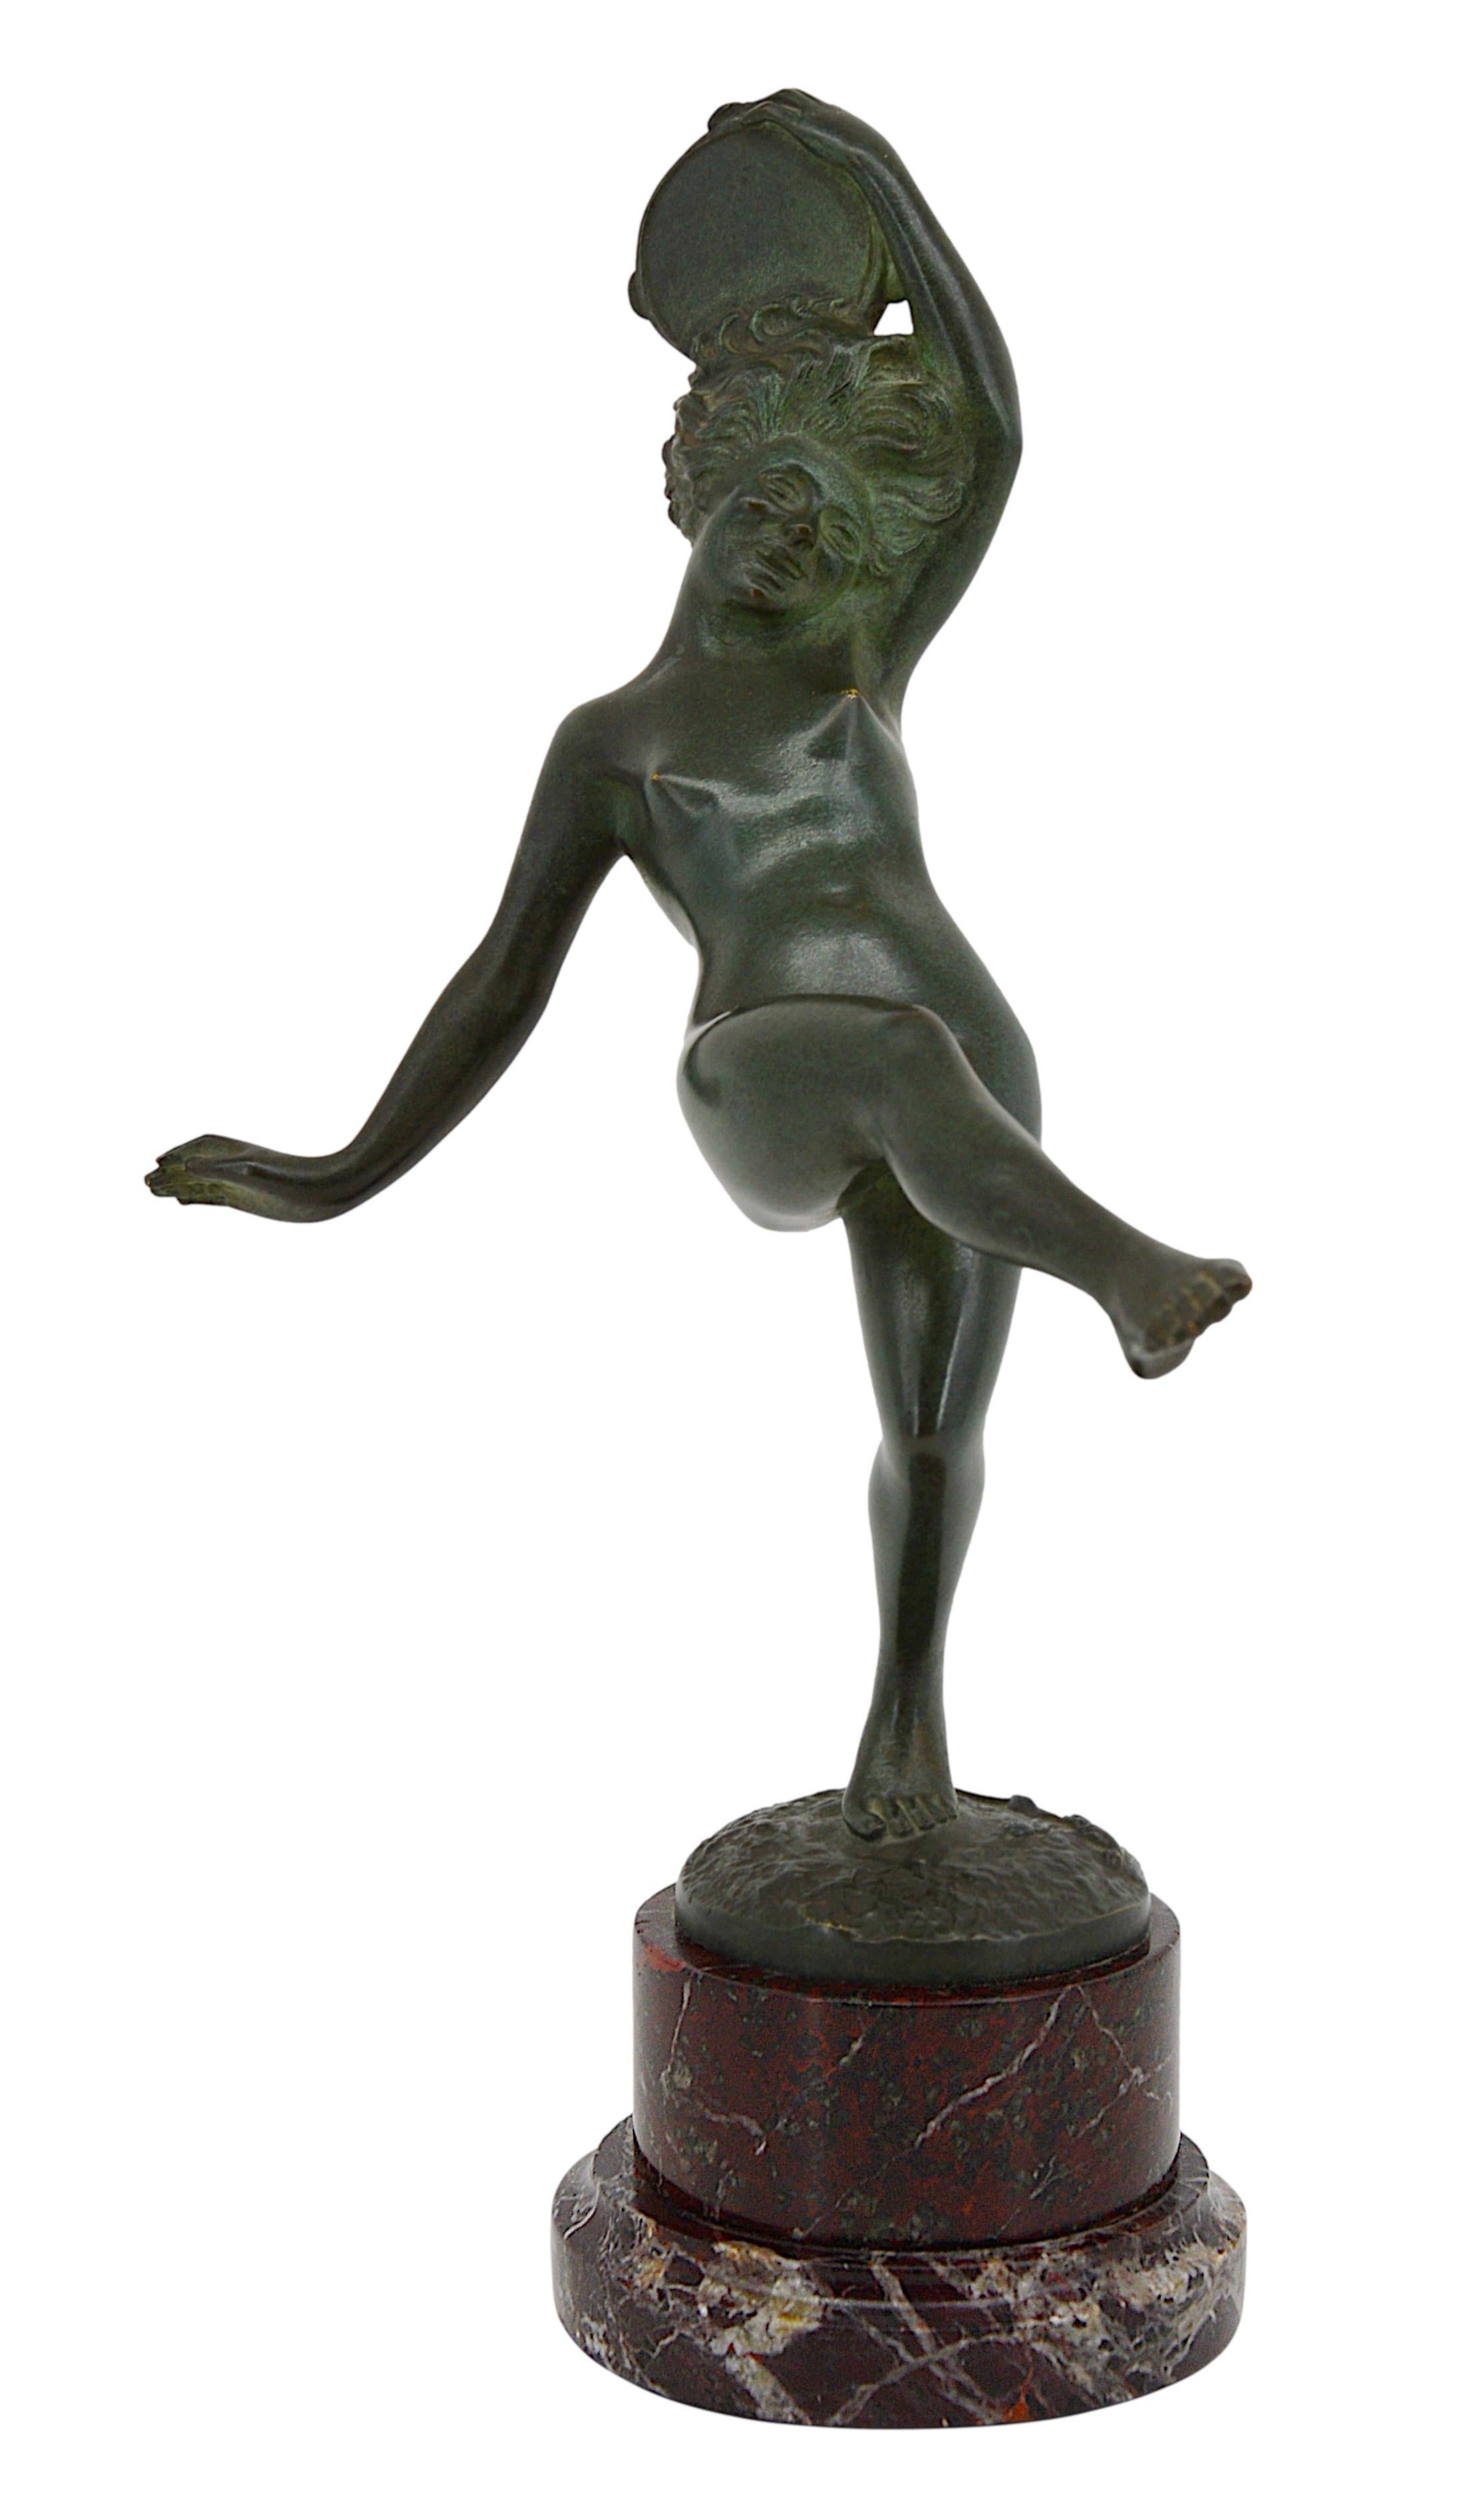 Echte französische Art-Déco-Skulptur von Robert Bousquet, Frankreich, Ende der 1910er Jahre. 